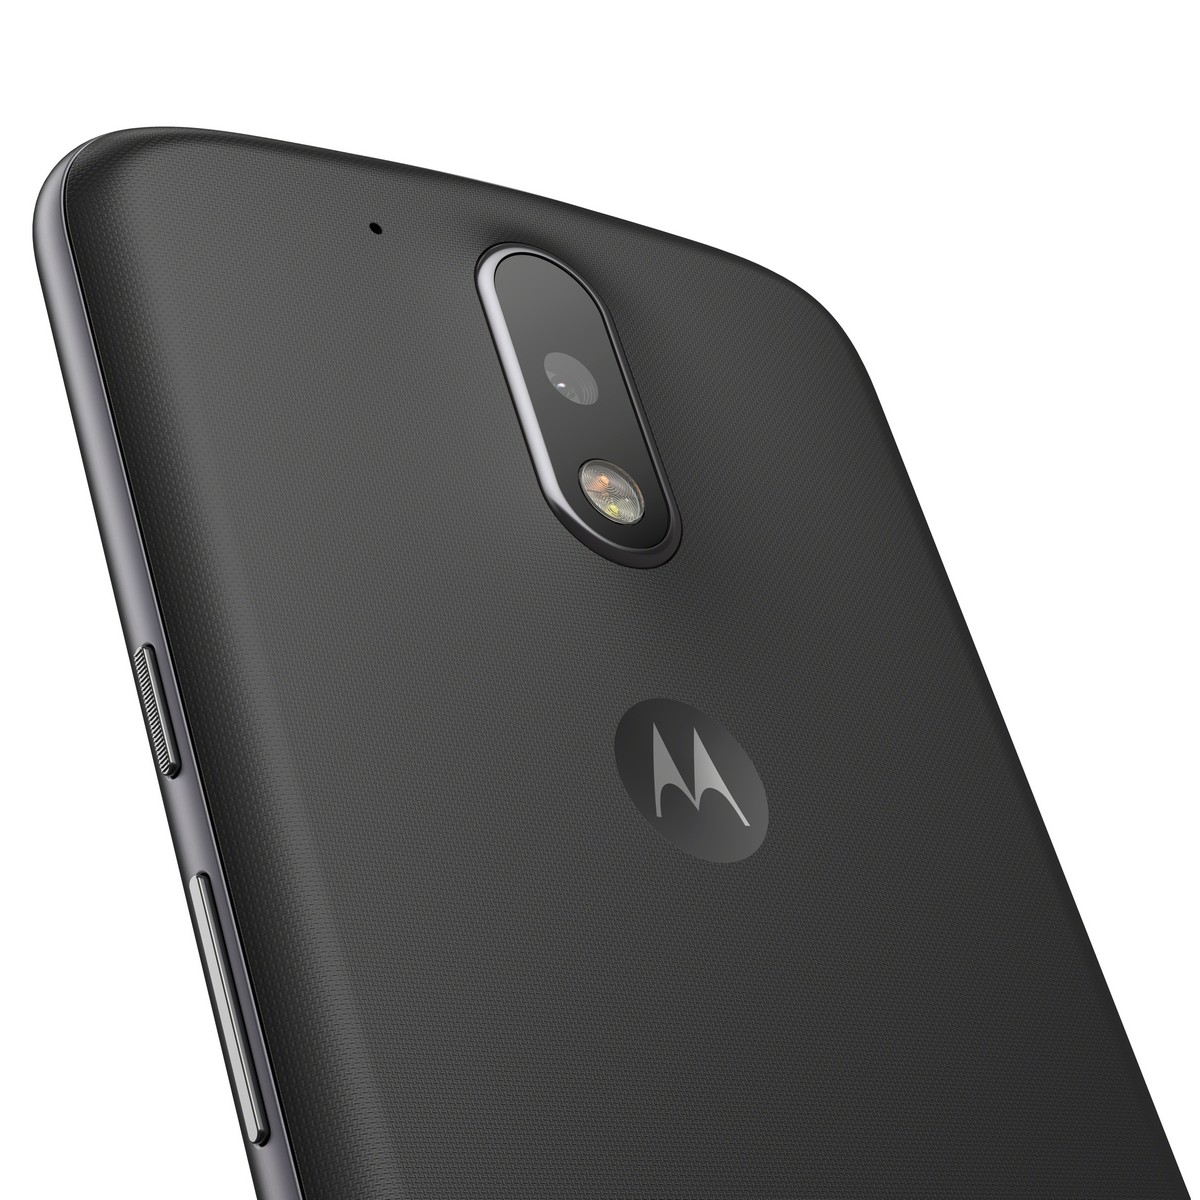 O que tem de bom no novo Motorola Moto G4? 